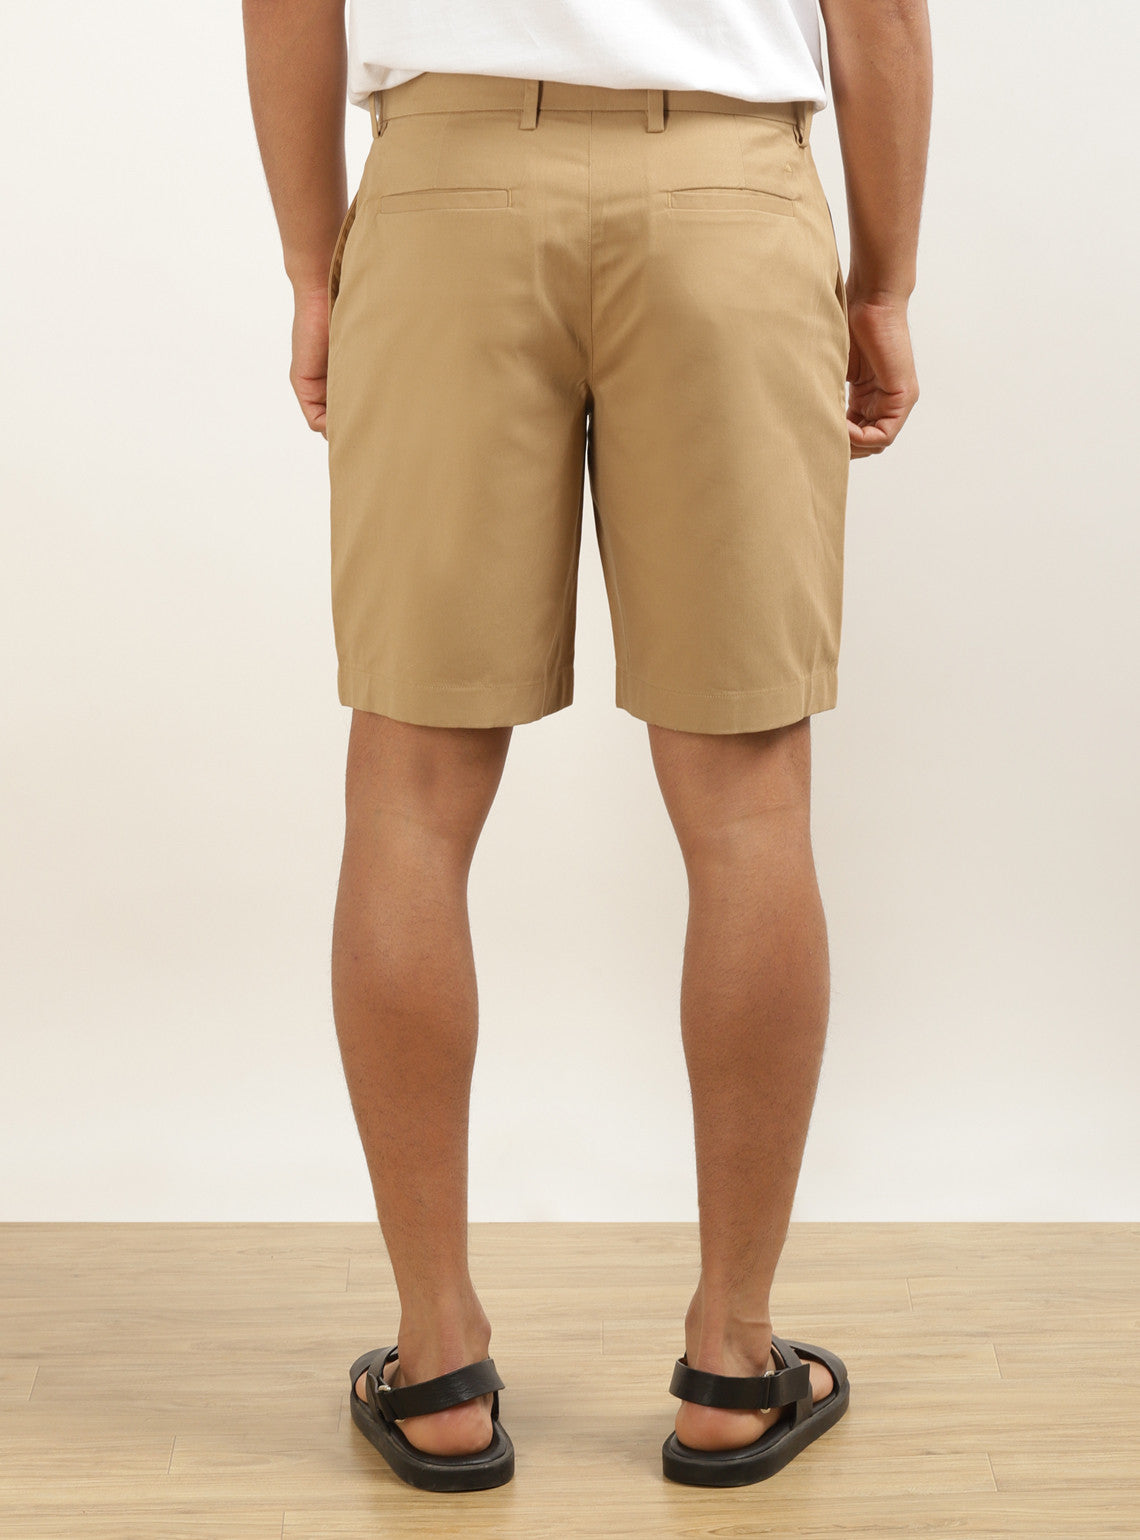 Raw Umber Shorts